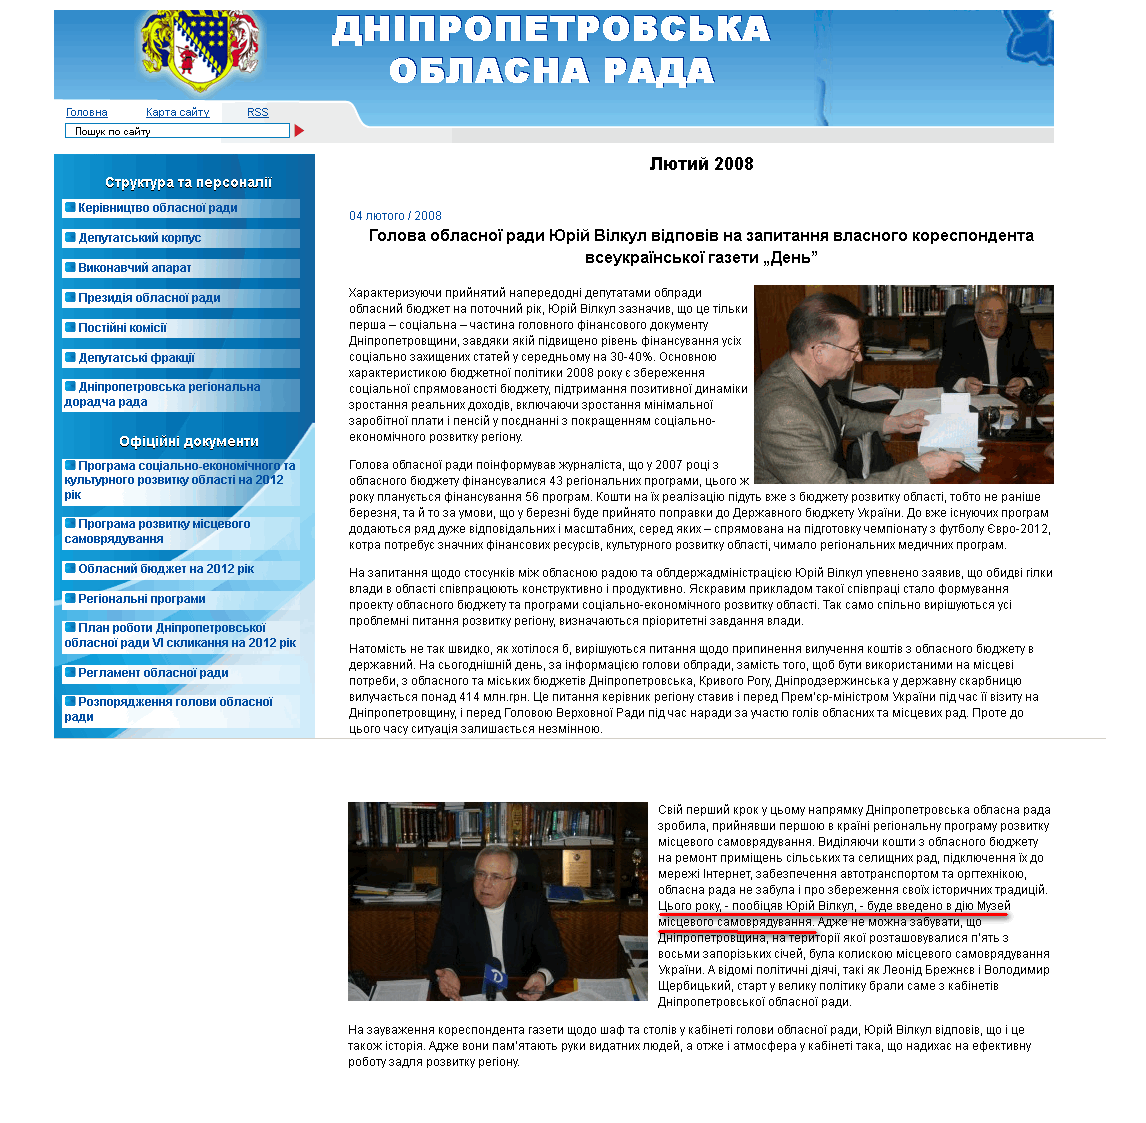 http://oblrada.dp.ua/press/news/2008-02/735